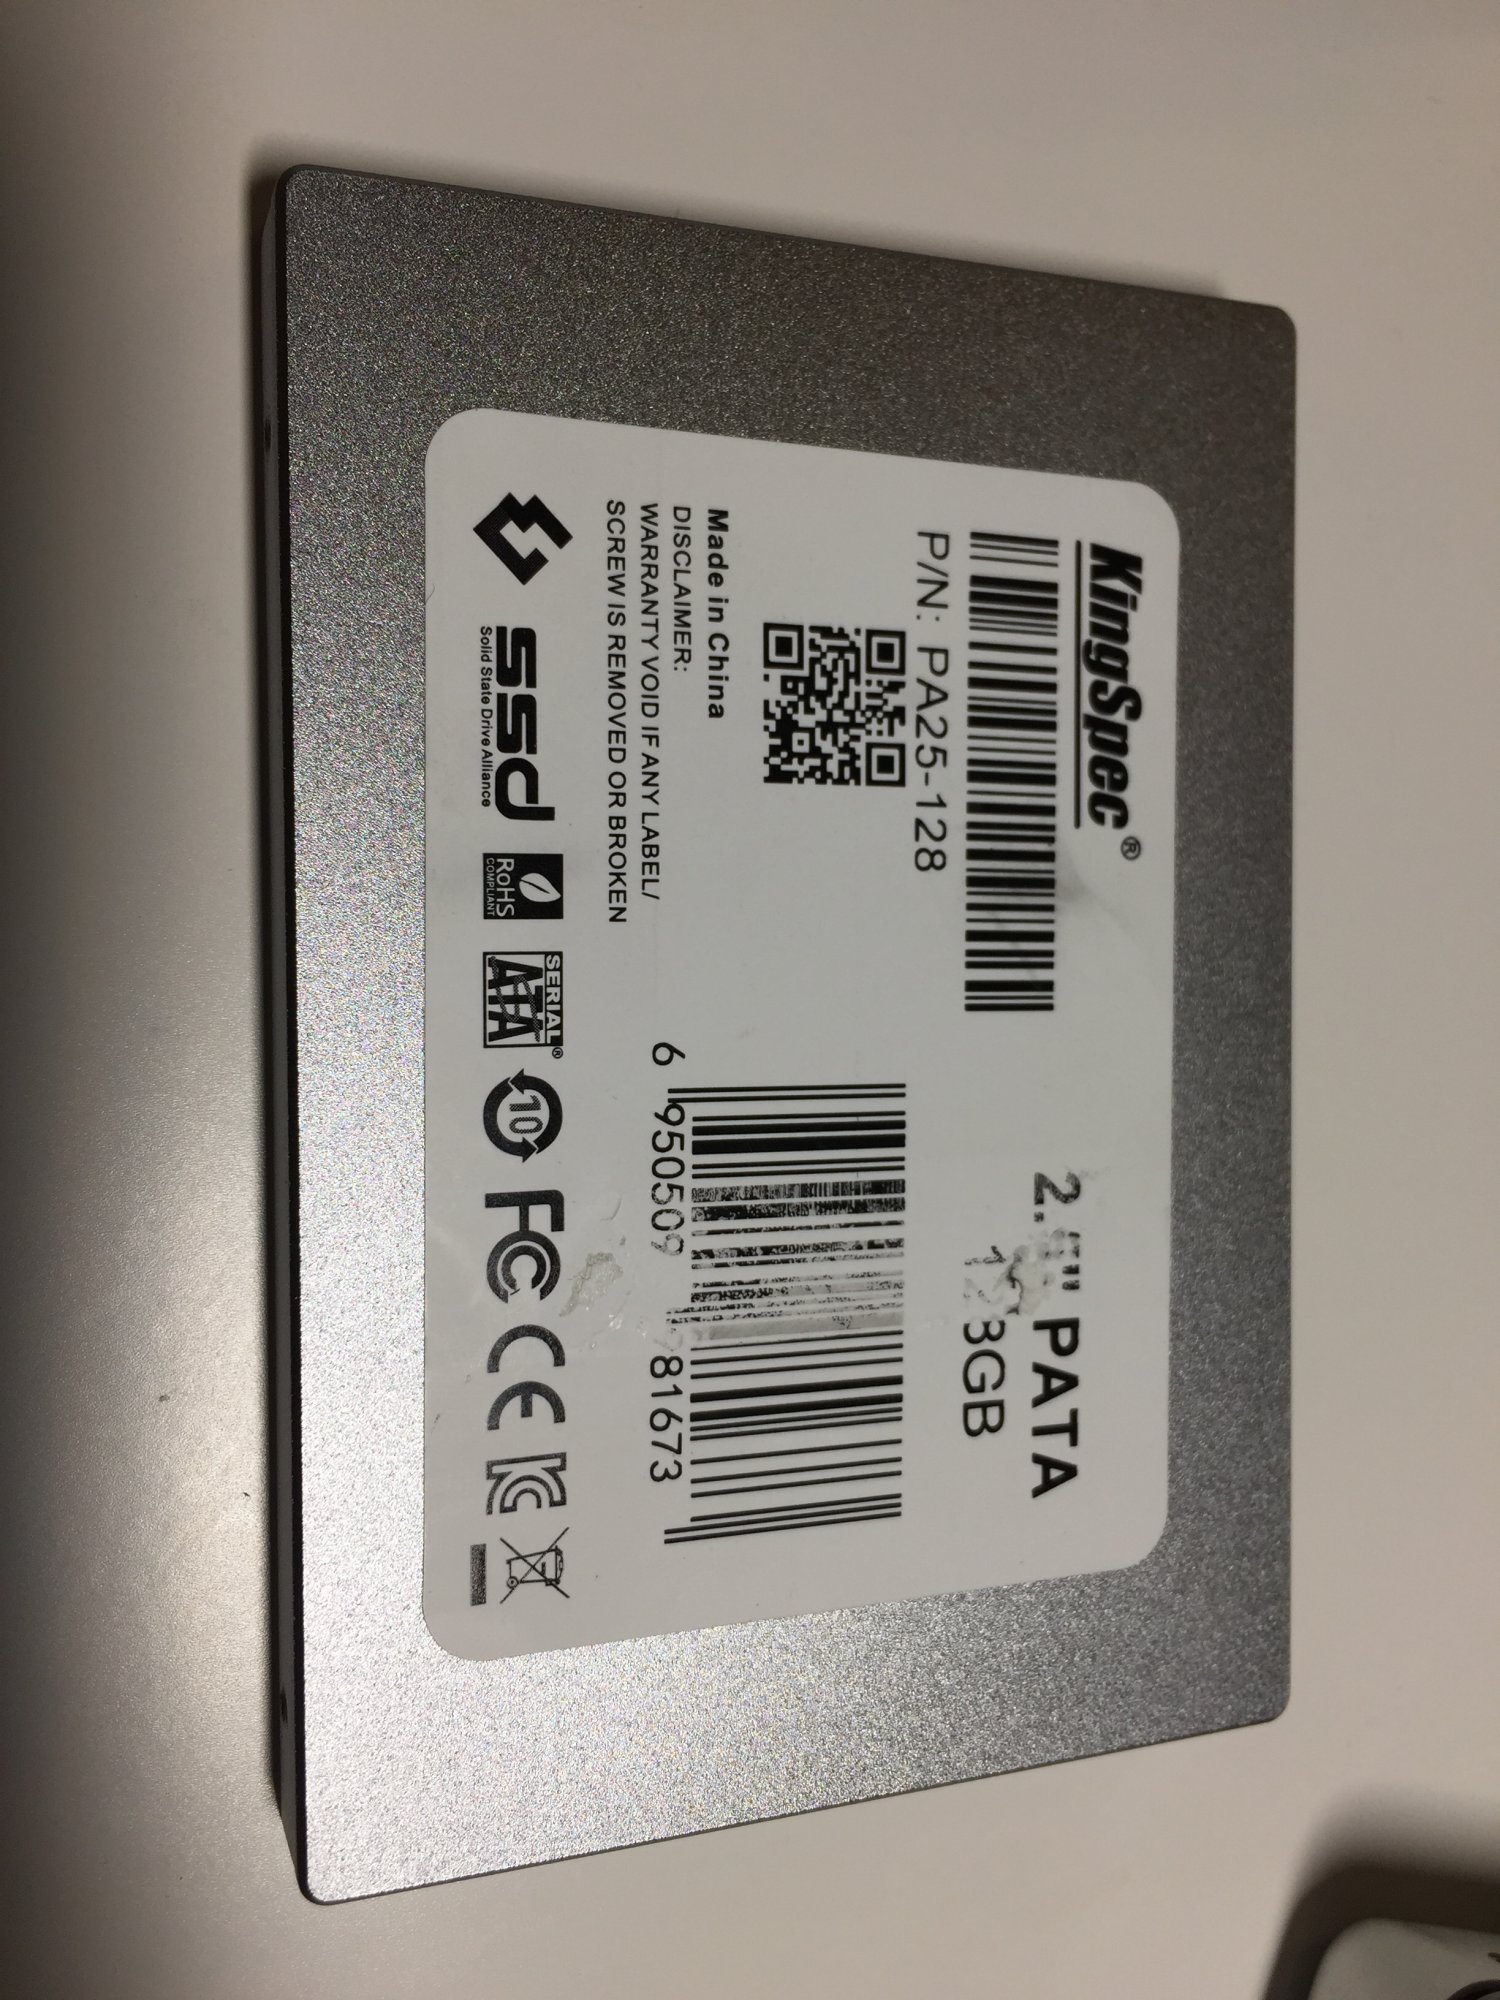 Kingspec or Zheino SSD